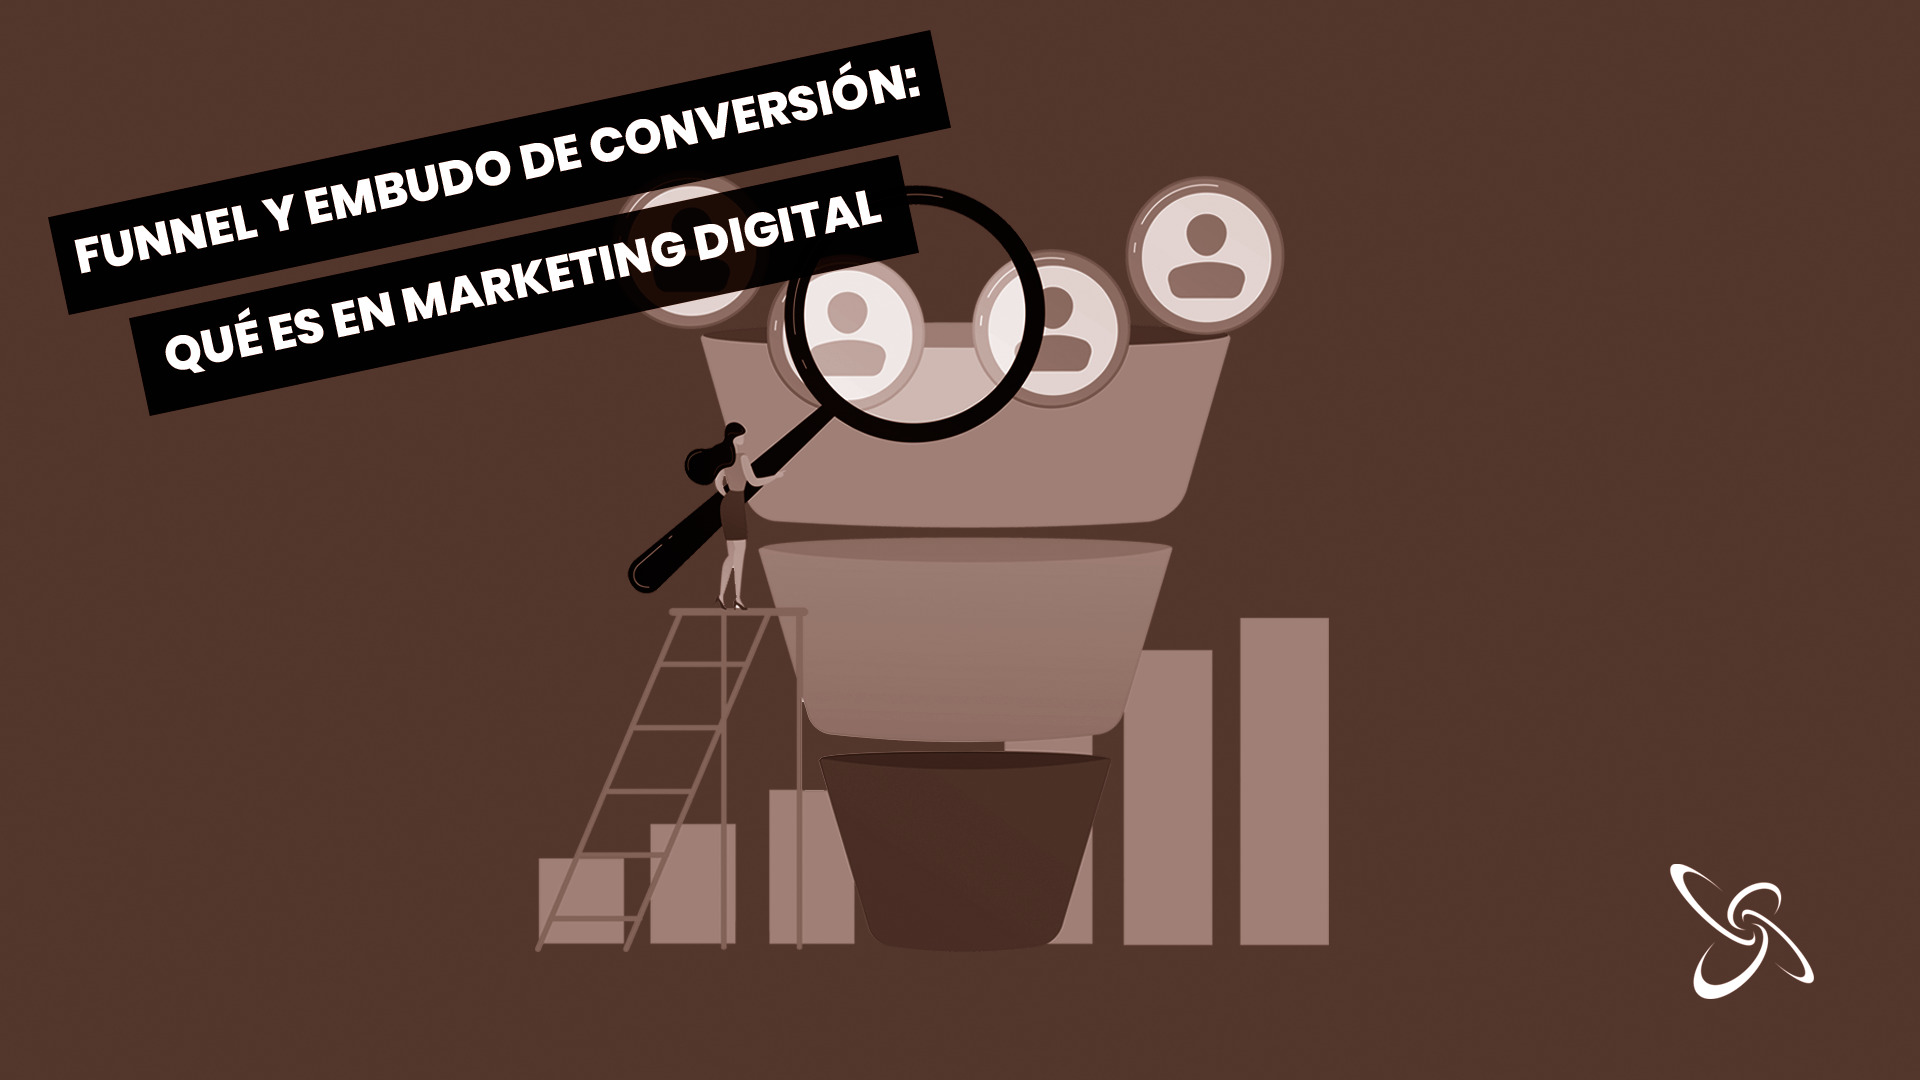 Funnel y embudo de conversión: qué es en marketing digital